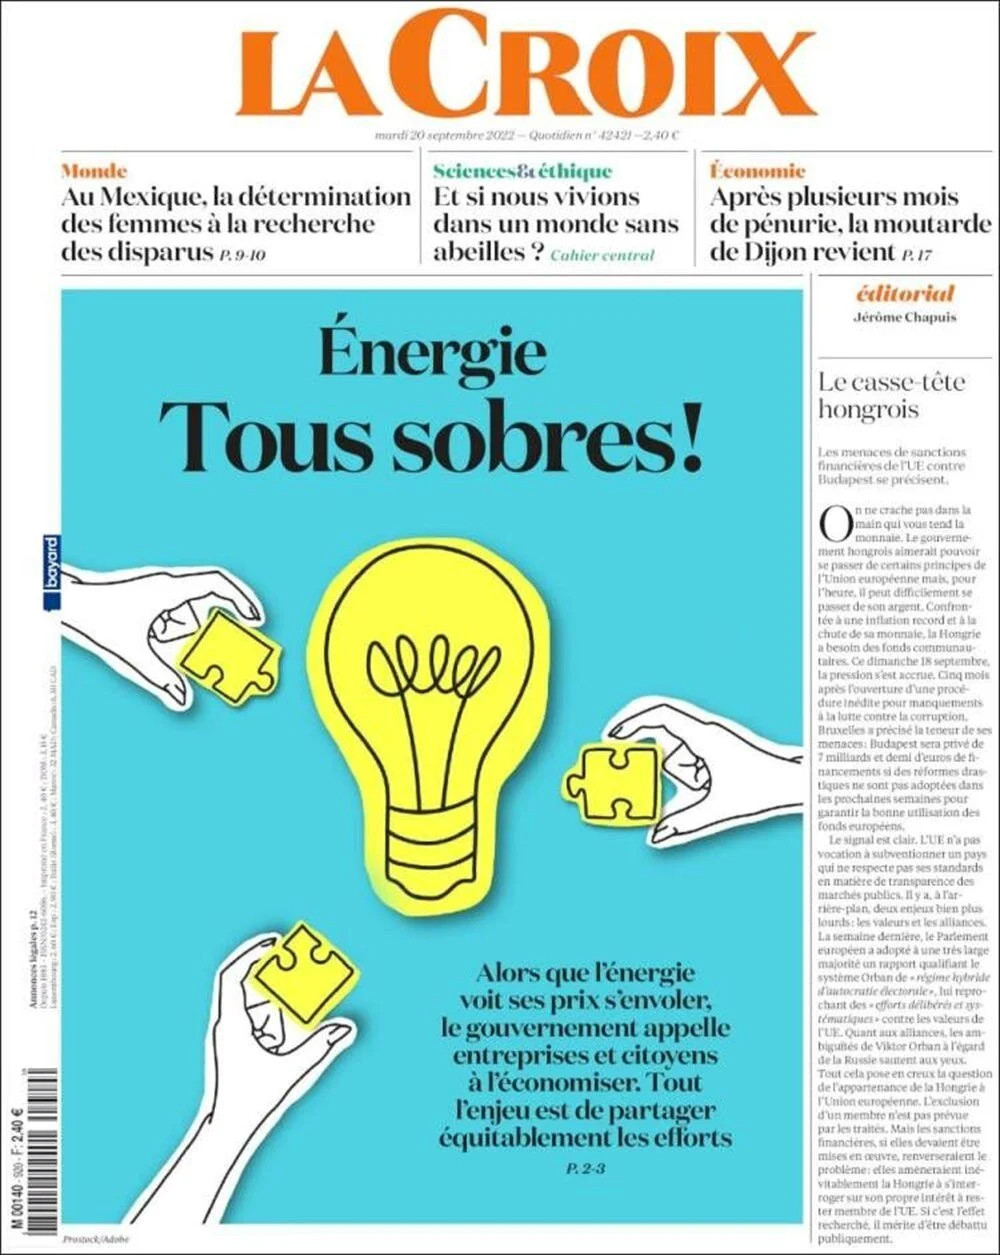 Fransa enerji krizinde: 'Kapatma çağrısı' manşetlerde!